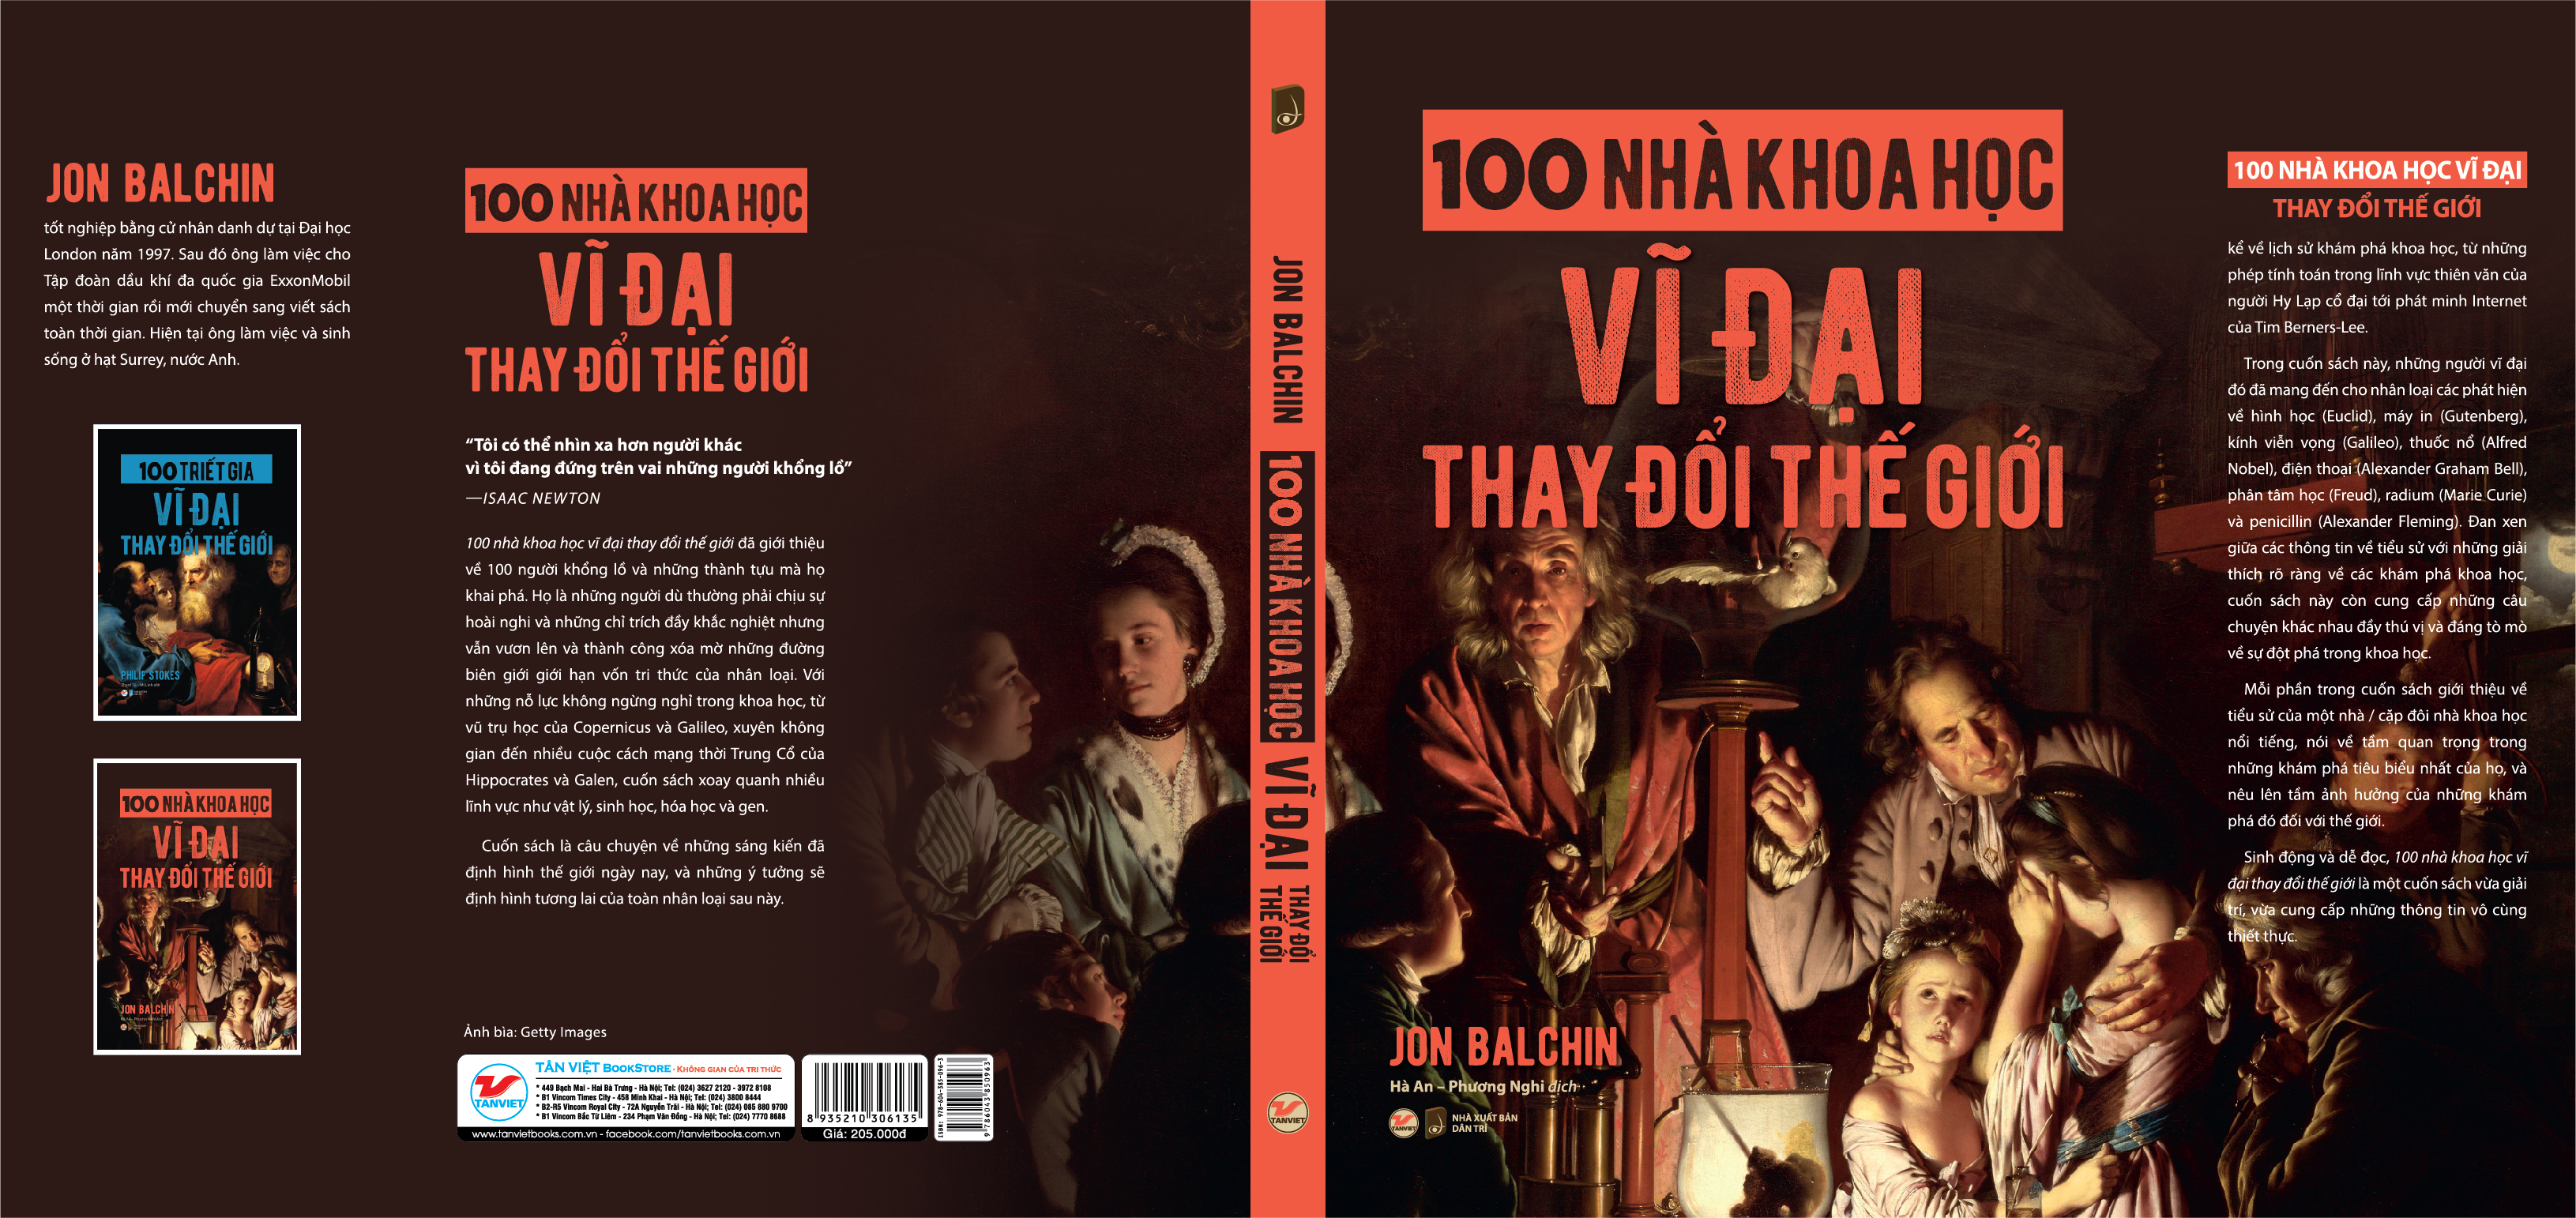 100 NHÀ KHOA HỌC VĨ ĐẠI THAY ĐỔI THẾ GIỚI – Jon Balchin – Hà An – Phương Nghi dịch - Tân Việt Books - NXB Dân trí (bìa mềm)